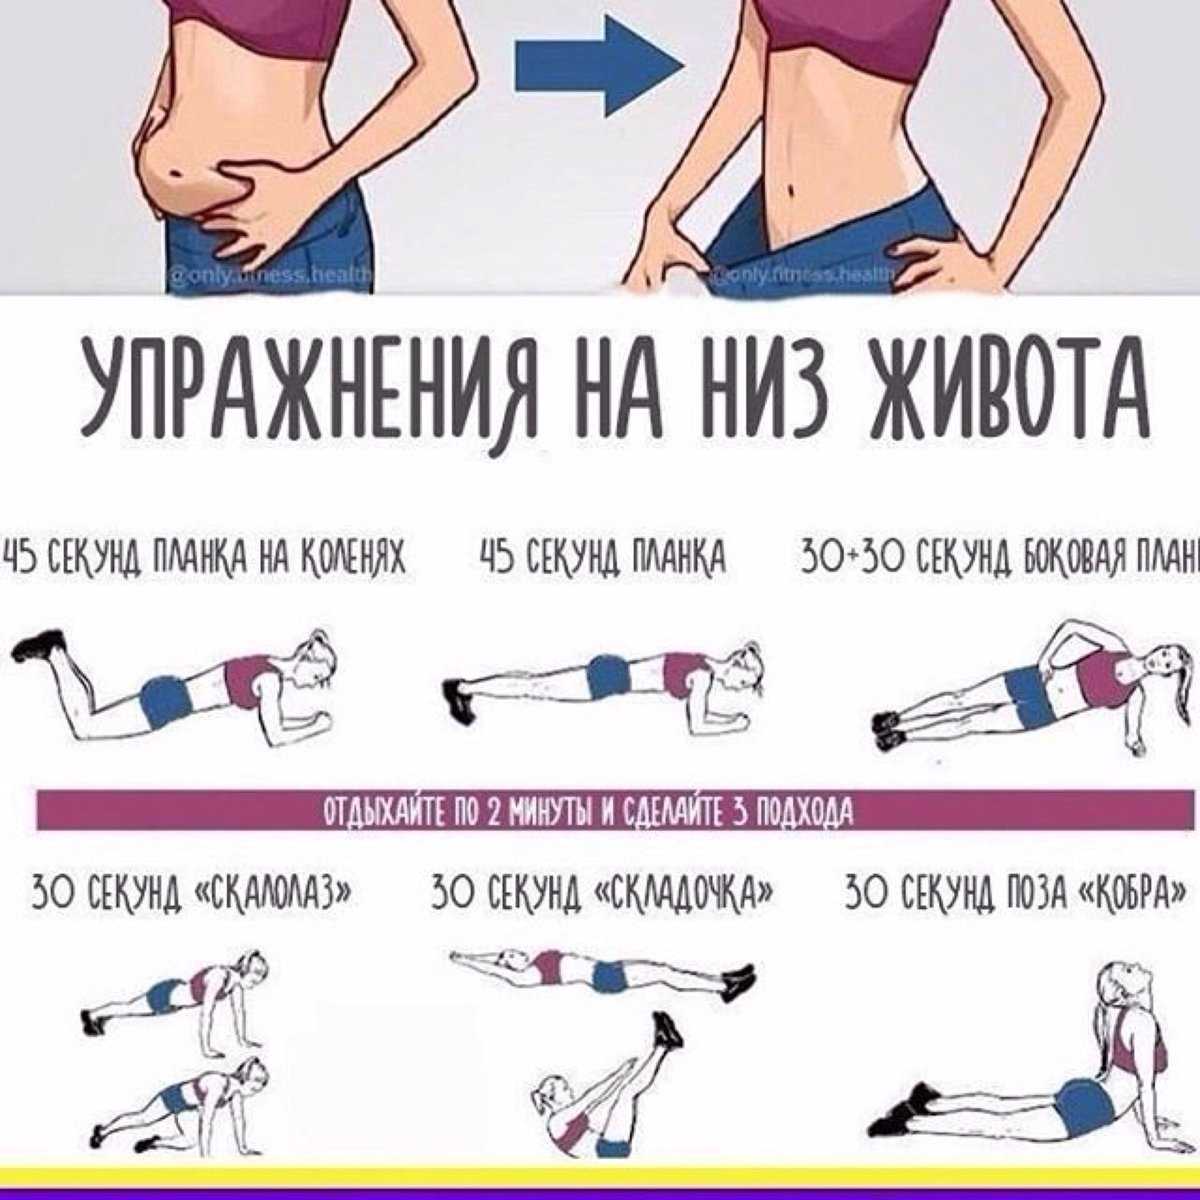 Как уменьшить желудок чтобы меньше есть без операции | alkopolitika.ru